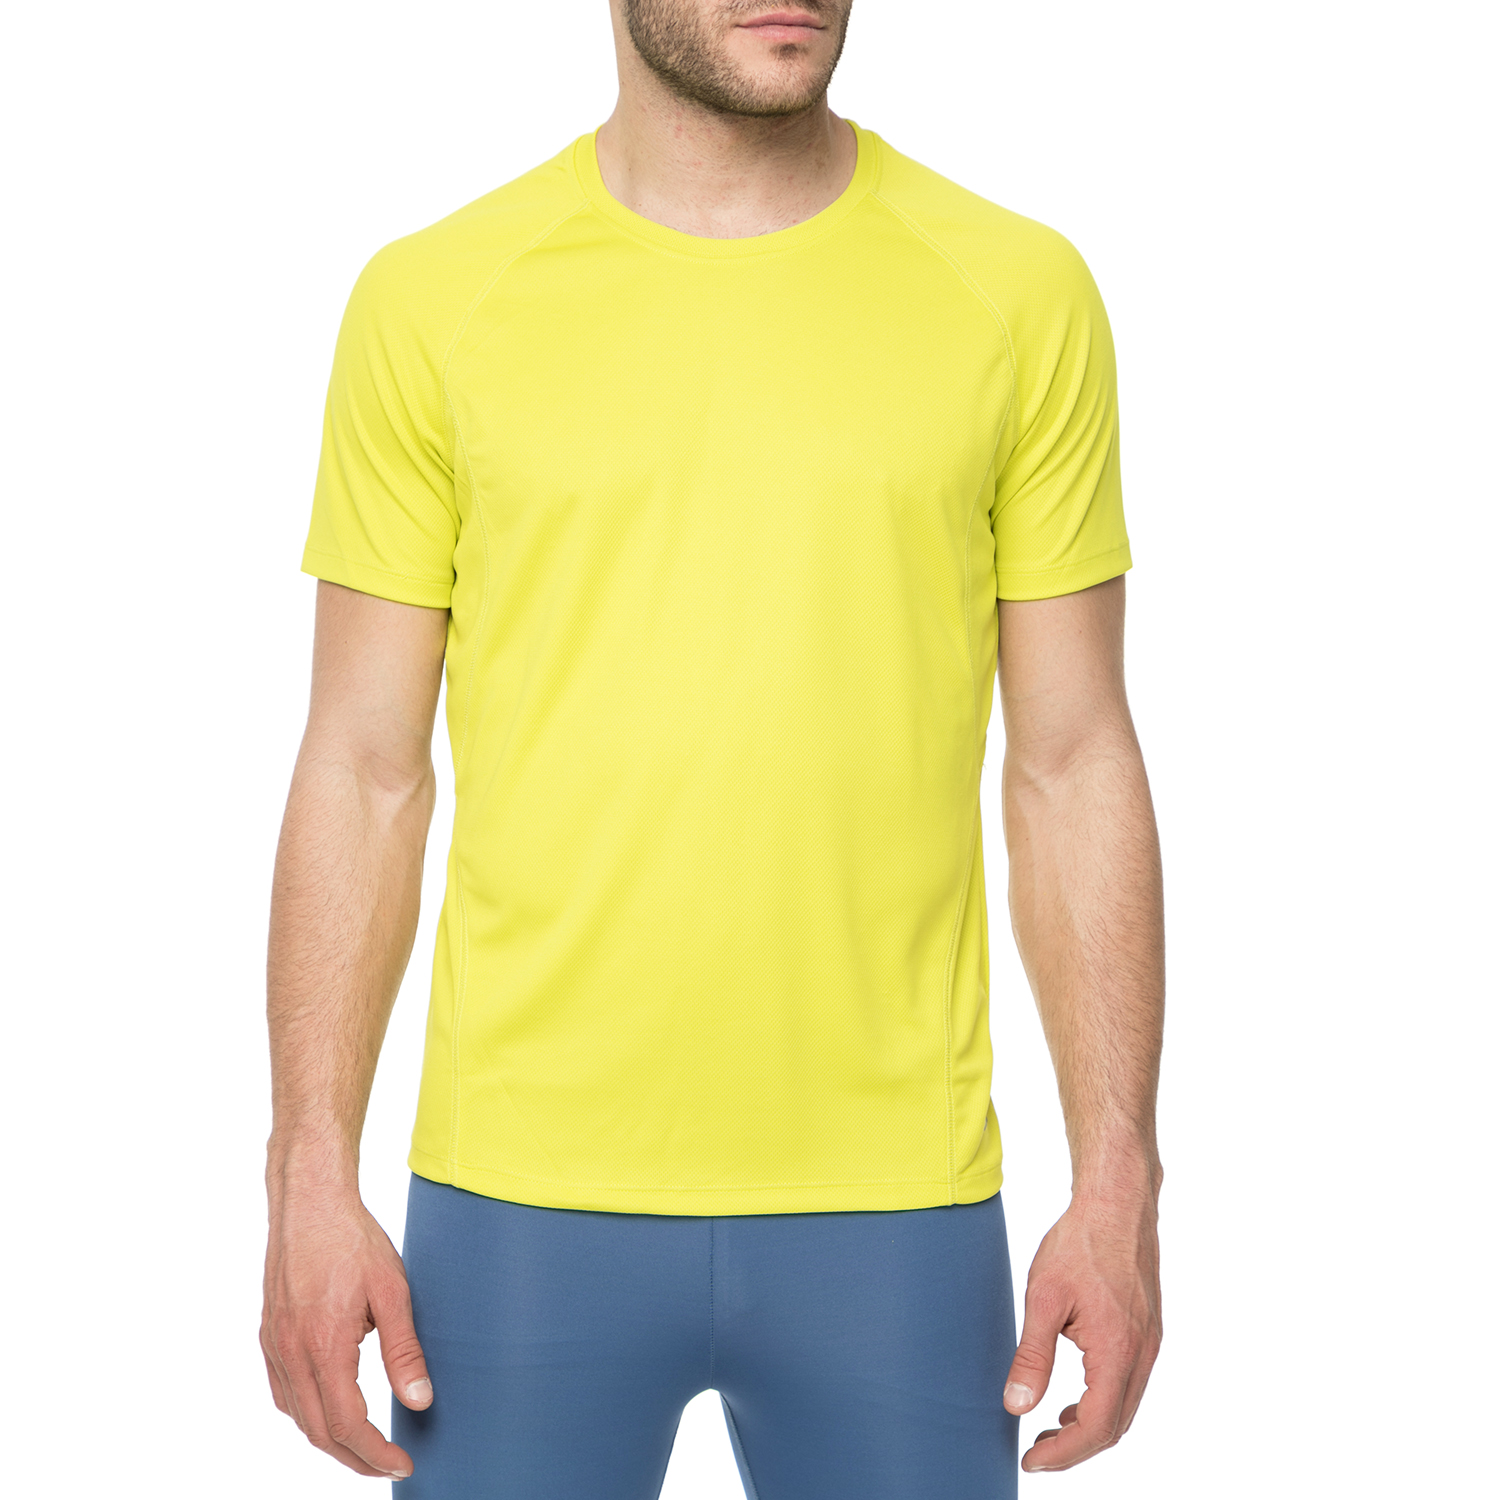 BODYTALK Ανδρικό αθλητικό t-shirt Bodytalk TECH κίτρινο